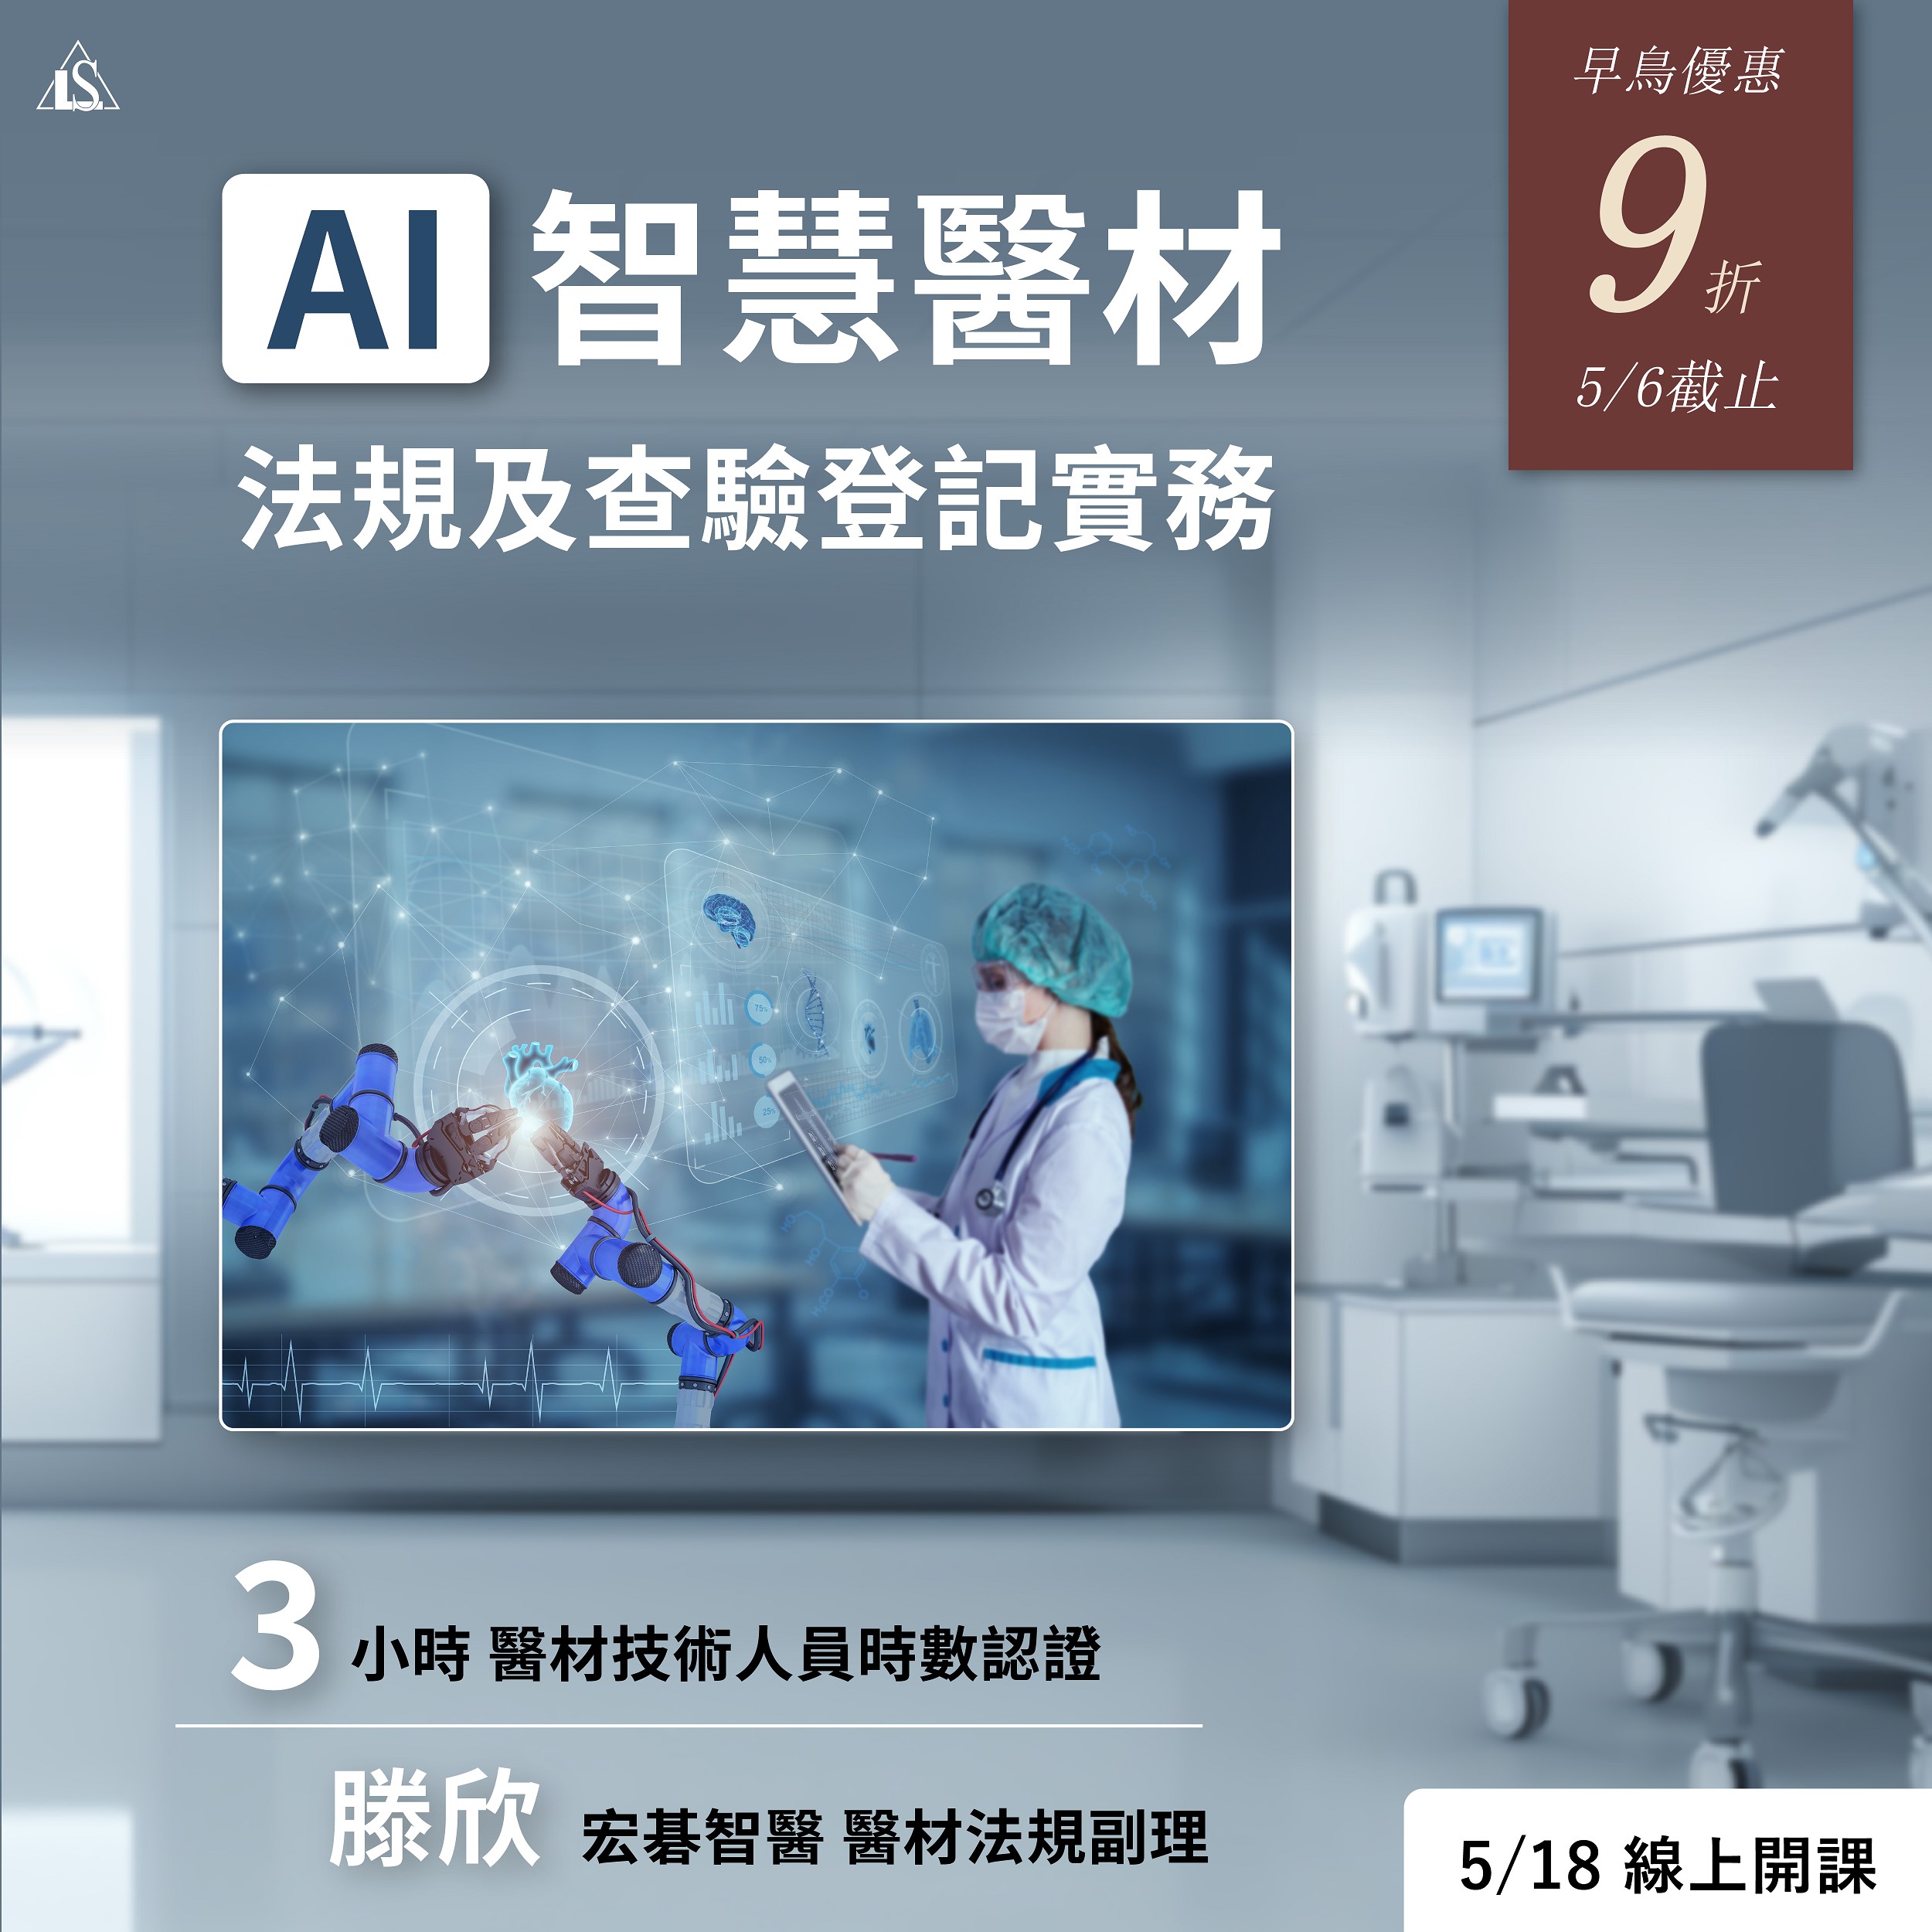 【課程】AI 智慧醫療器材法規及查驗登記實務